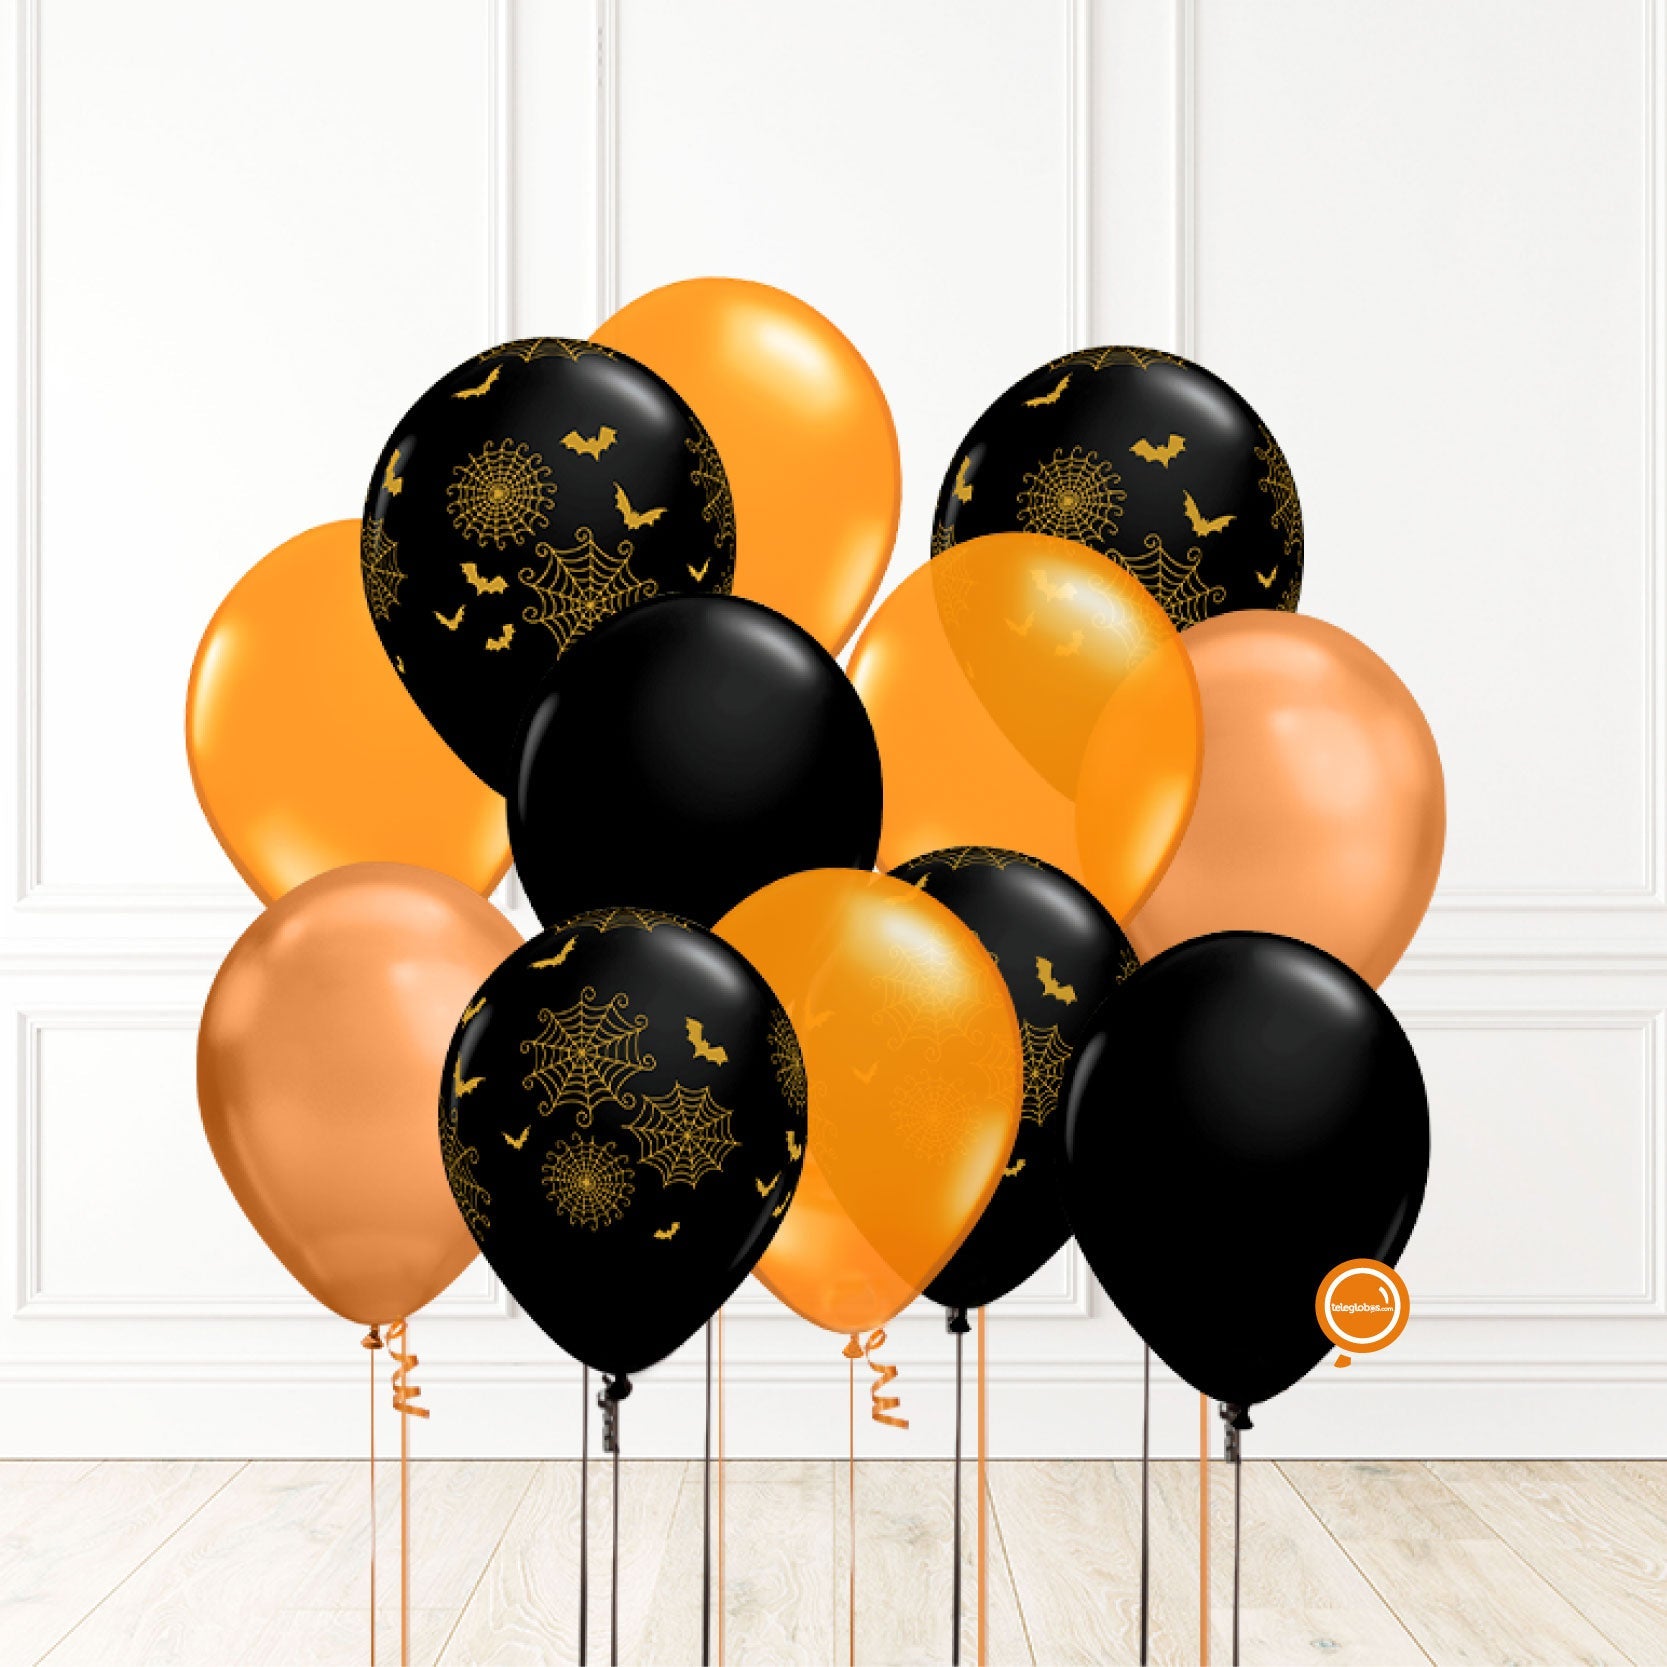 12 globos inflados con helio -Halloween II- Bio* -RACHA03- | Globos y Regalos Teleglobos.com.mx.